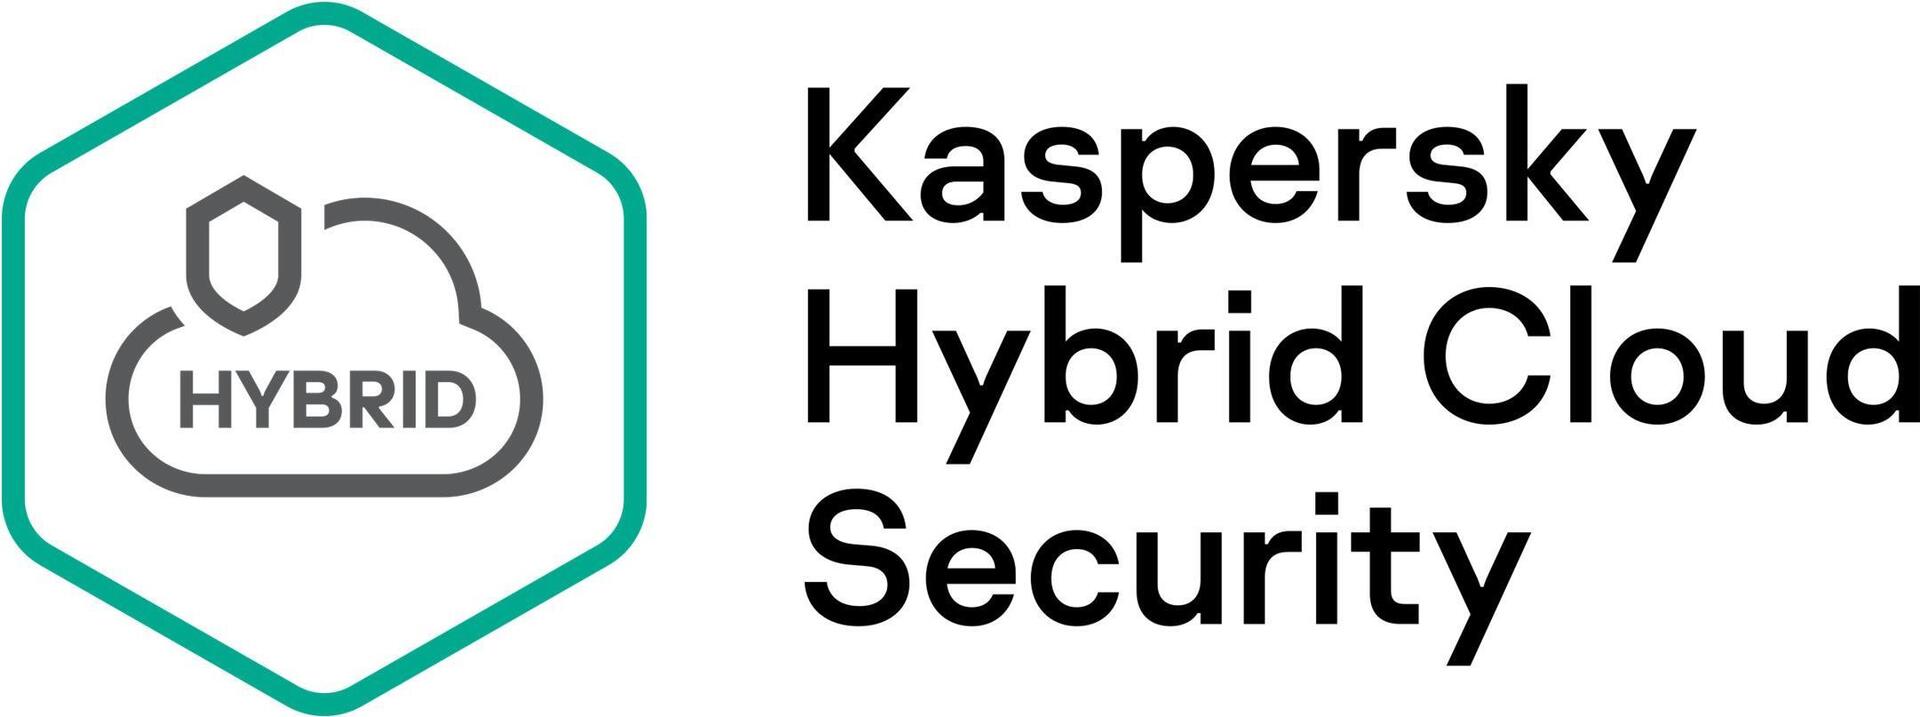 Kaspersky Hybrid Cloud Security (KL4554XAAF9)